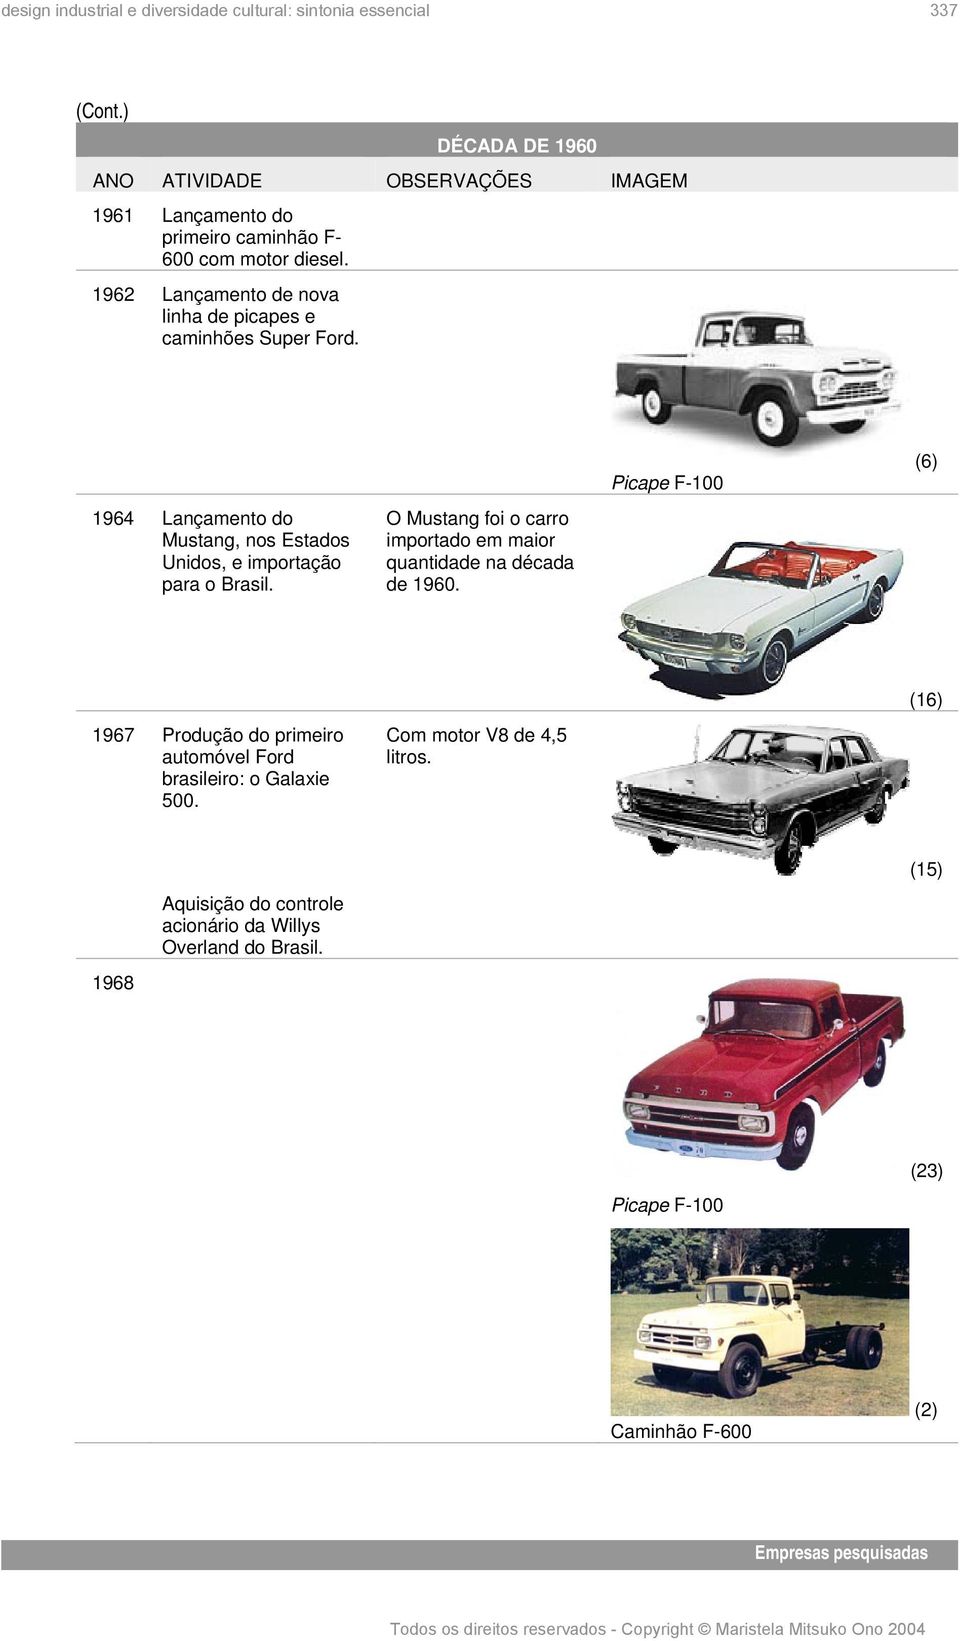 O Mustang foi o carro importado em maior quantidade na década de 1960.